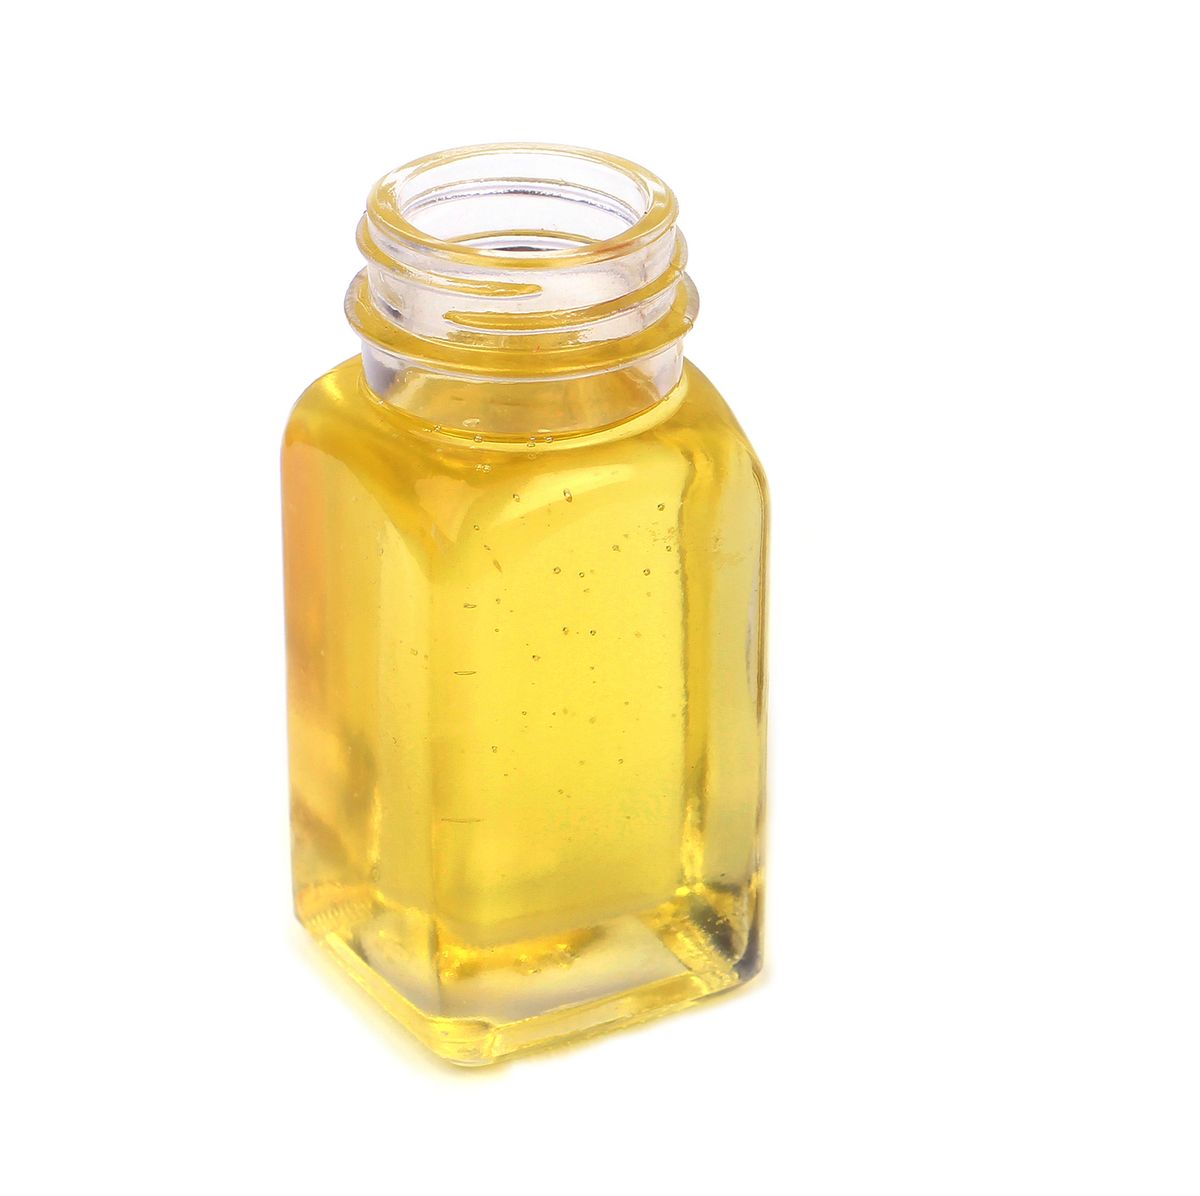 castor oil in glass bottle on white background